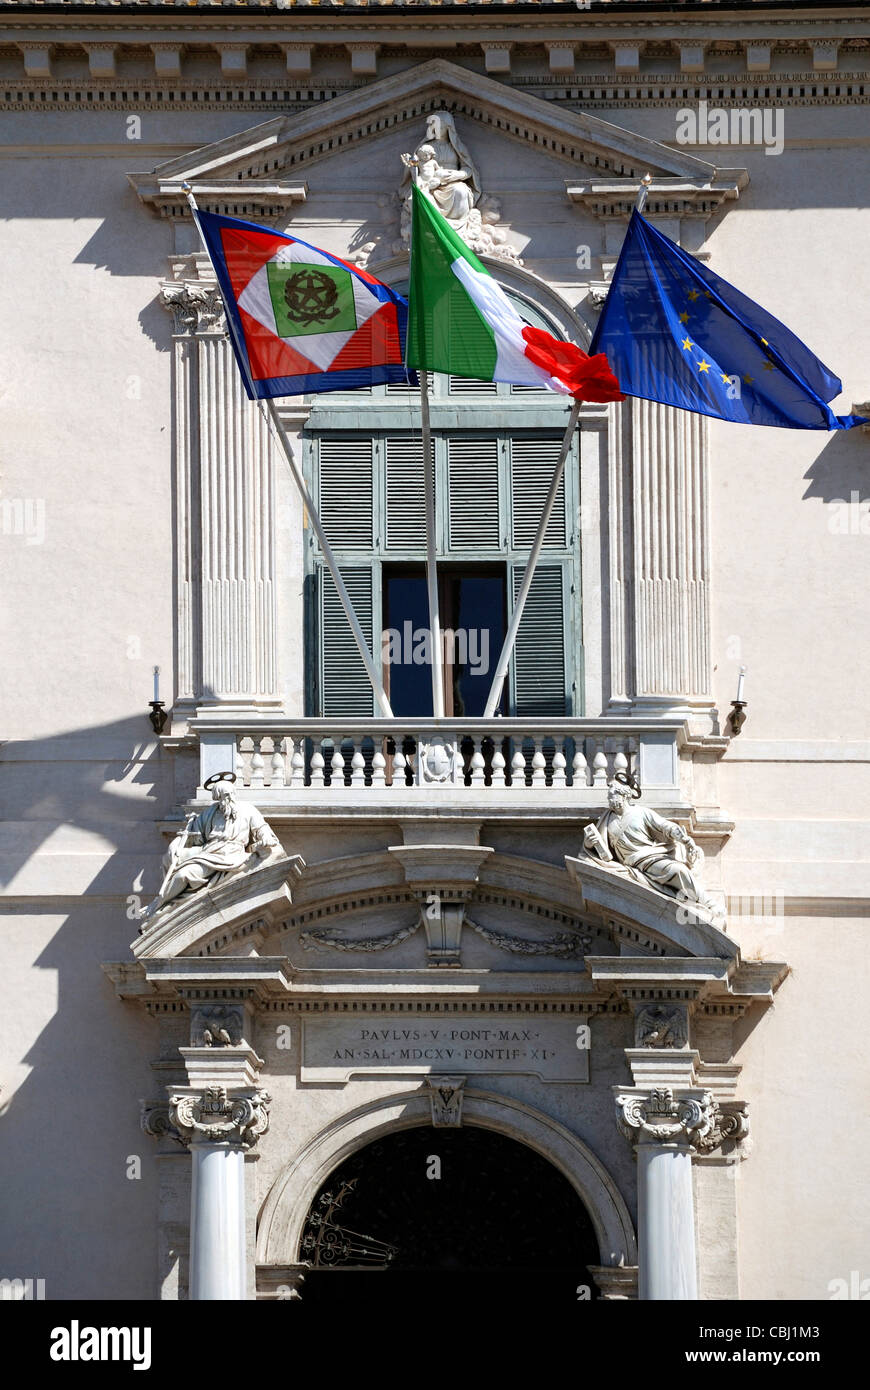 Les drapeaux sur le palais du Quirinal à Rome - Résidence du président italien. Banque D'Images